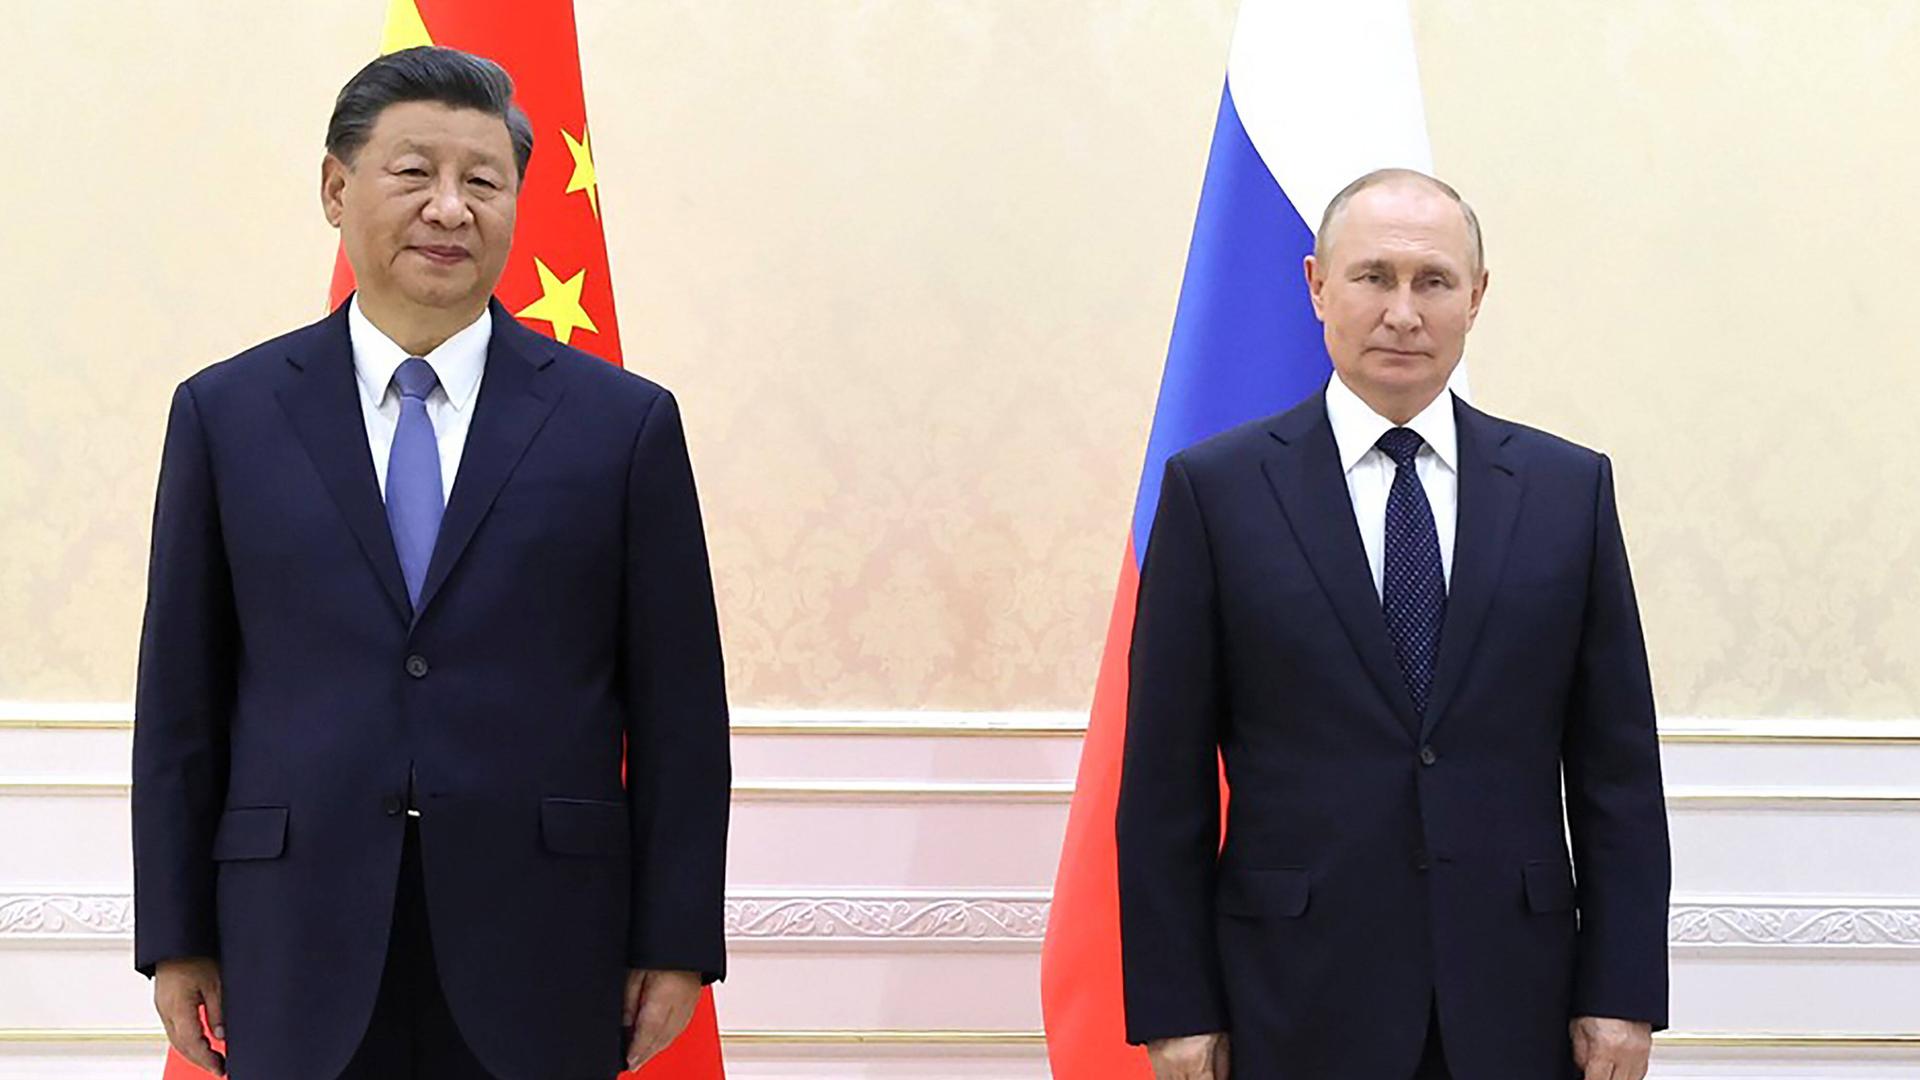 Xi Jinping und Wladimir Putin vor ihren Landesflaggen